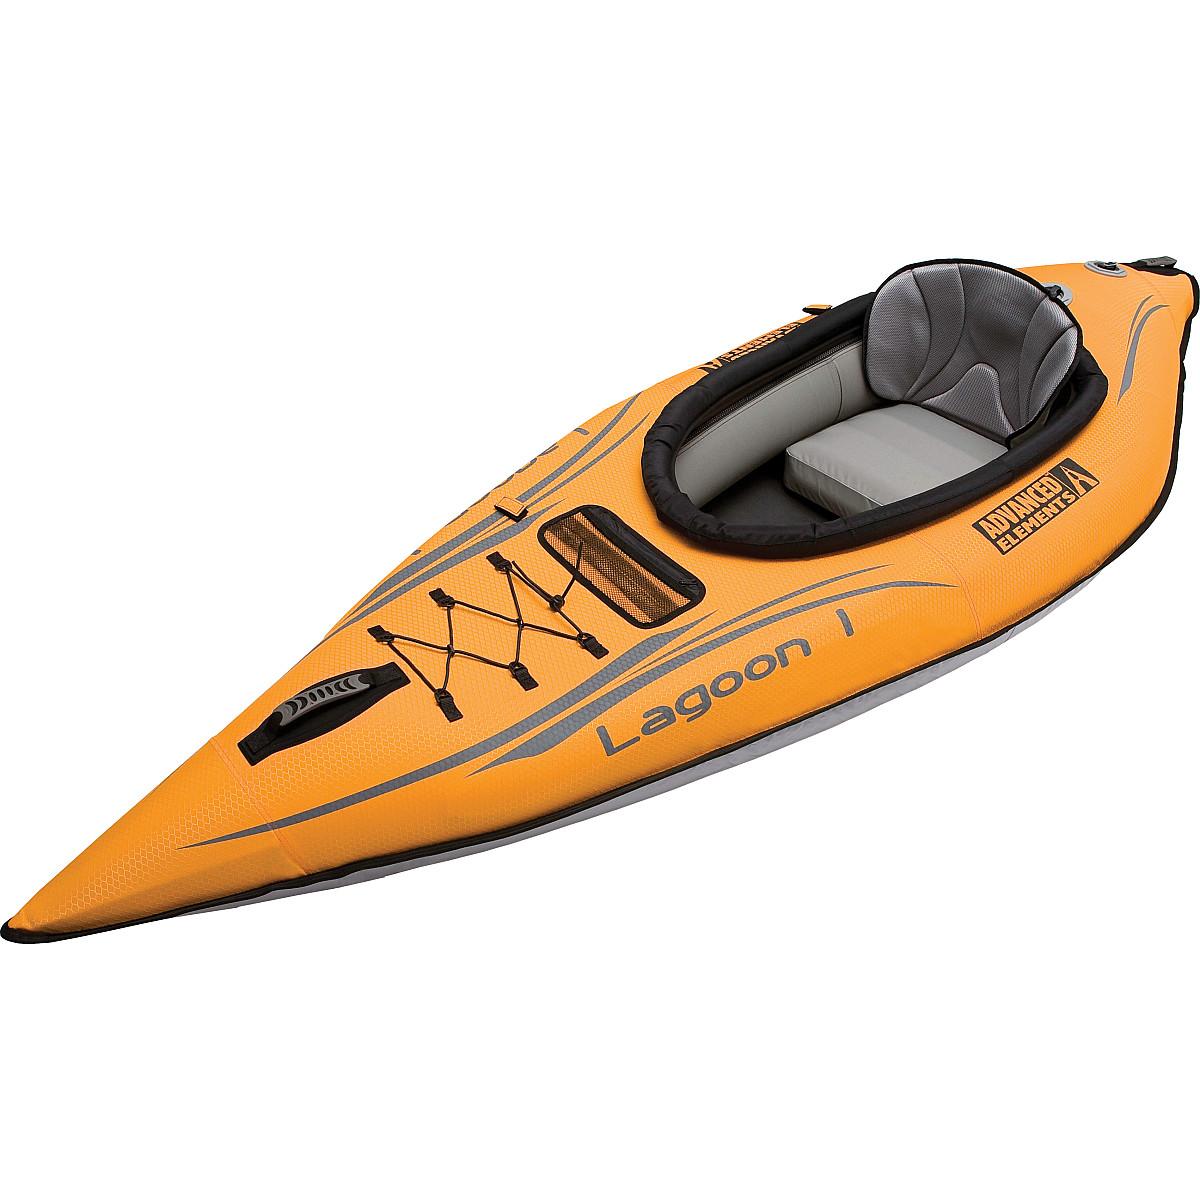 Advanced Elements Lagoon 1 Inflatable Kayak - image 1 of 3